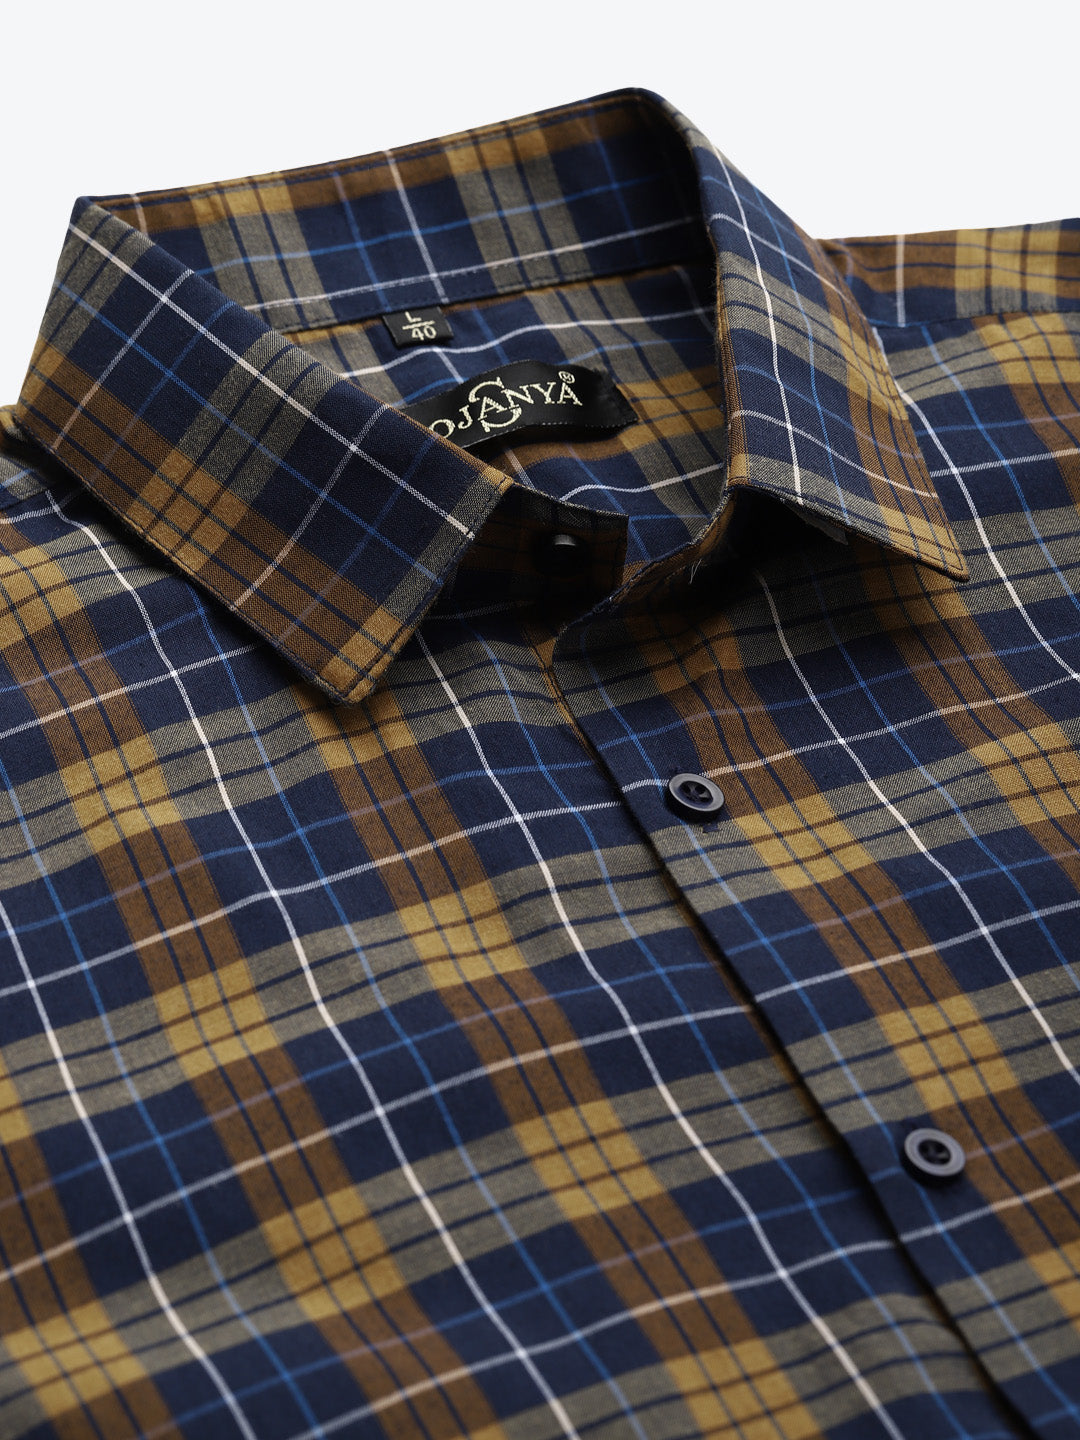 Men's Cotton Navy & Mustard Formal Shirt - Sojanya